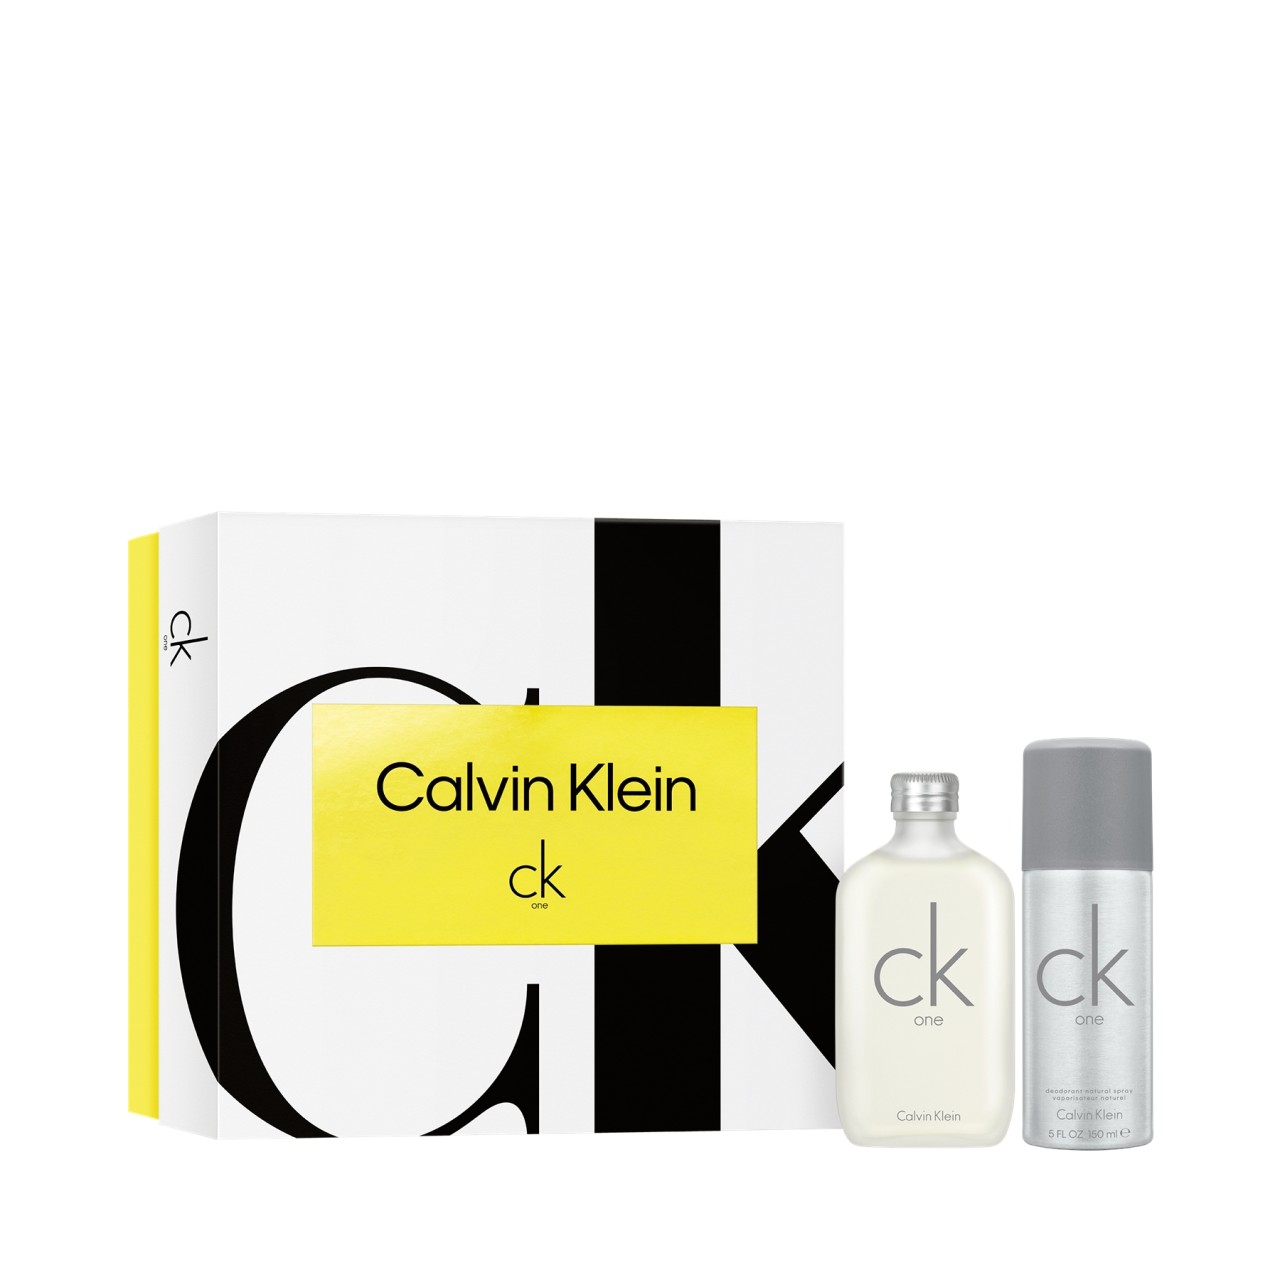 Calvin Klein - Ck One Edt Spray 100 Ml Set - 